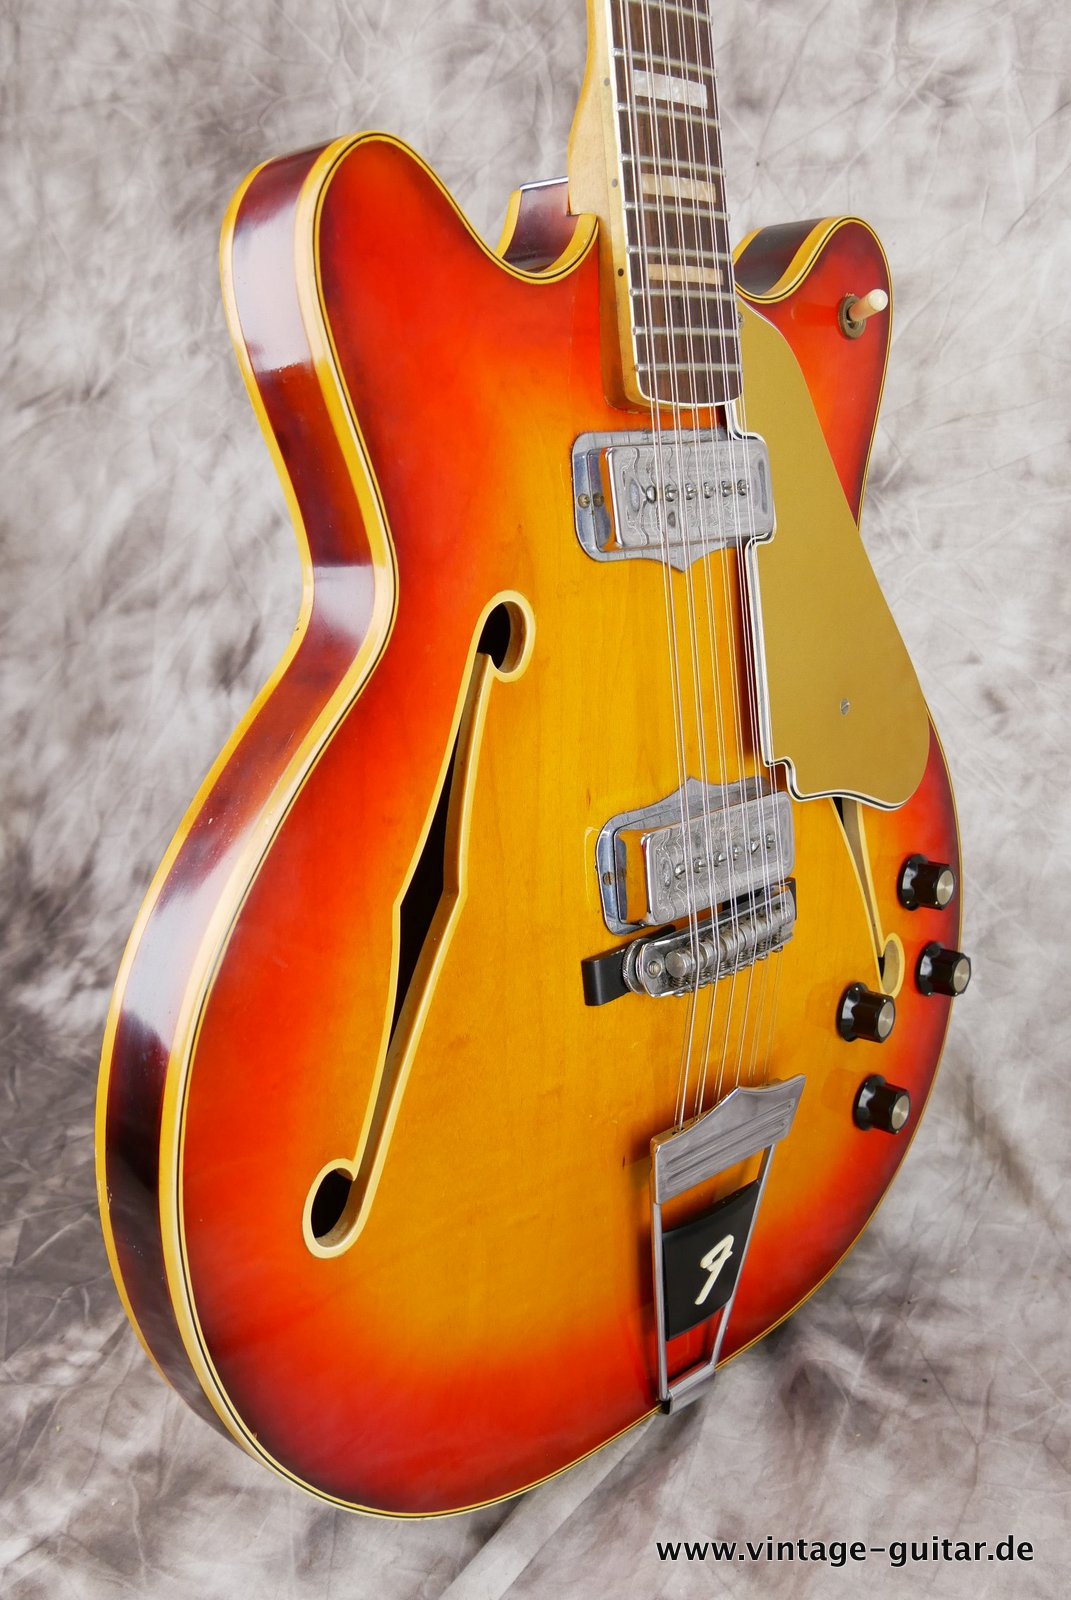 Fender_Coronado_XI_sunburst_1966-005.JPG